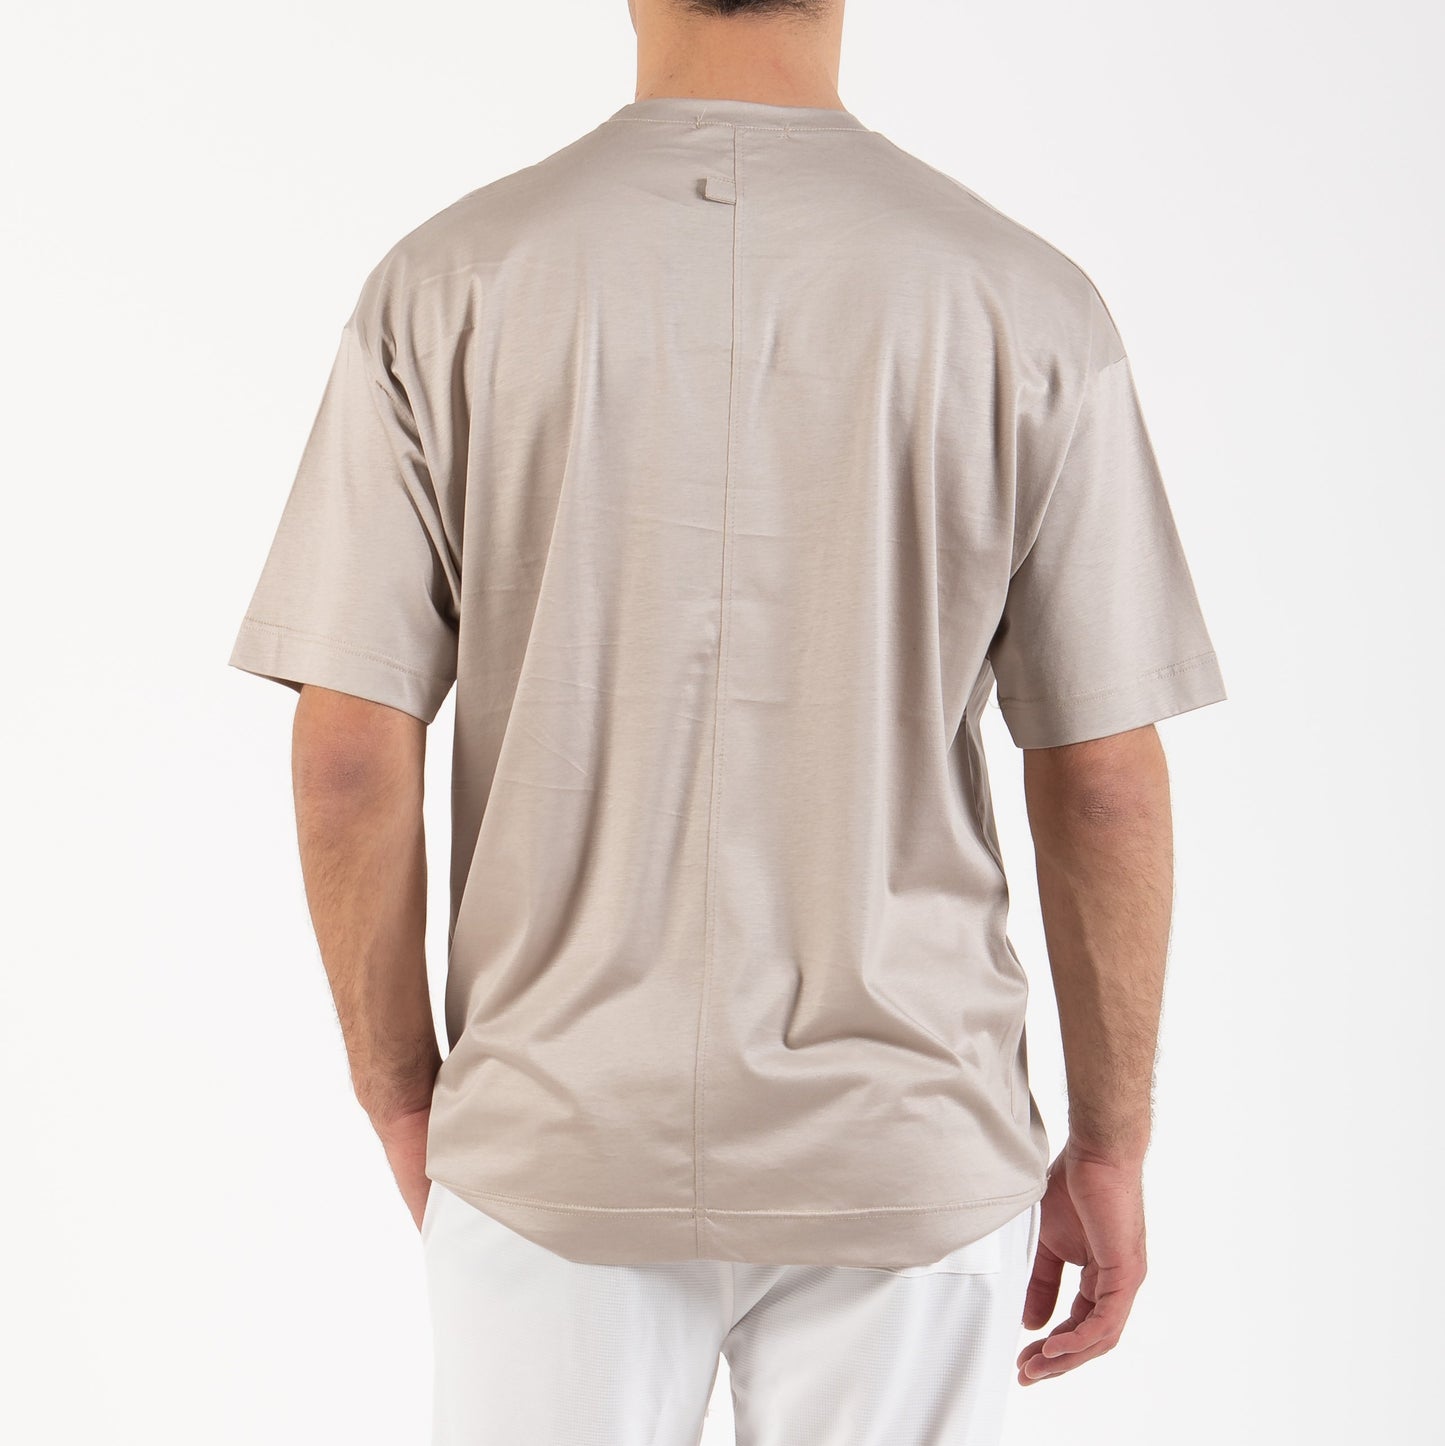 Κοντομάνικο T-Shirt Reckless Μπεζ 100% Βαμβάκι Ελληνικής Κατασκευής με Στρογγυλή Λαιμόκοψη - Άνετη Εφαρμογή για Καθημερινή Χρήση | RC5205BS